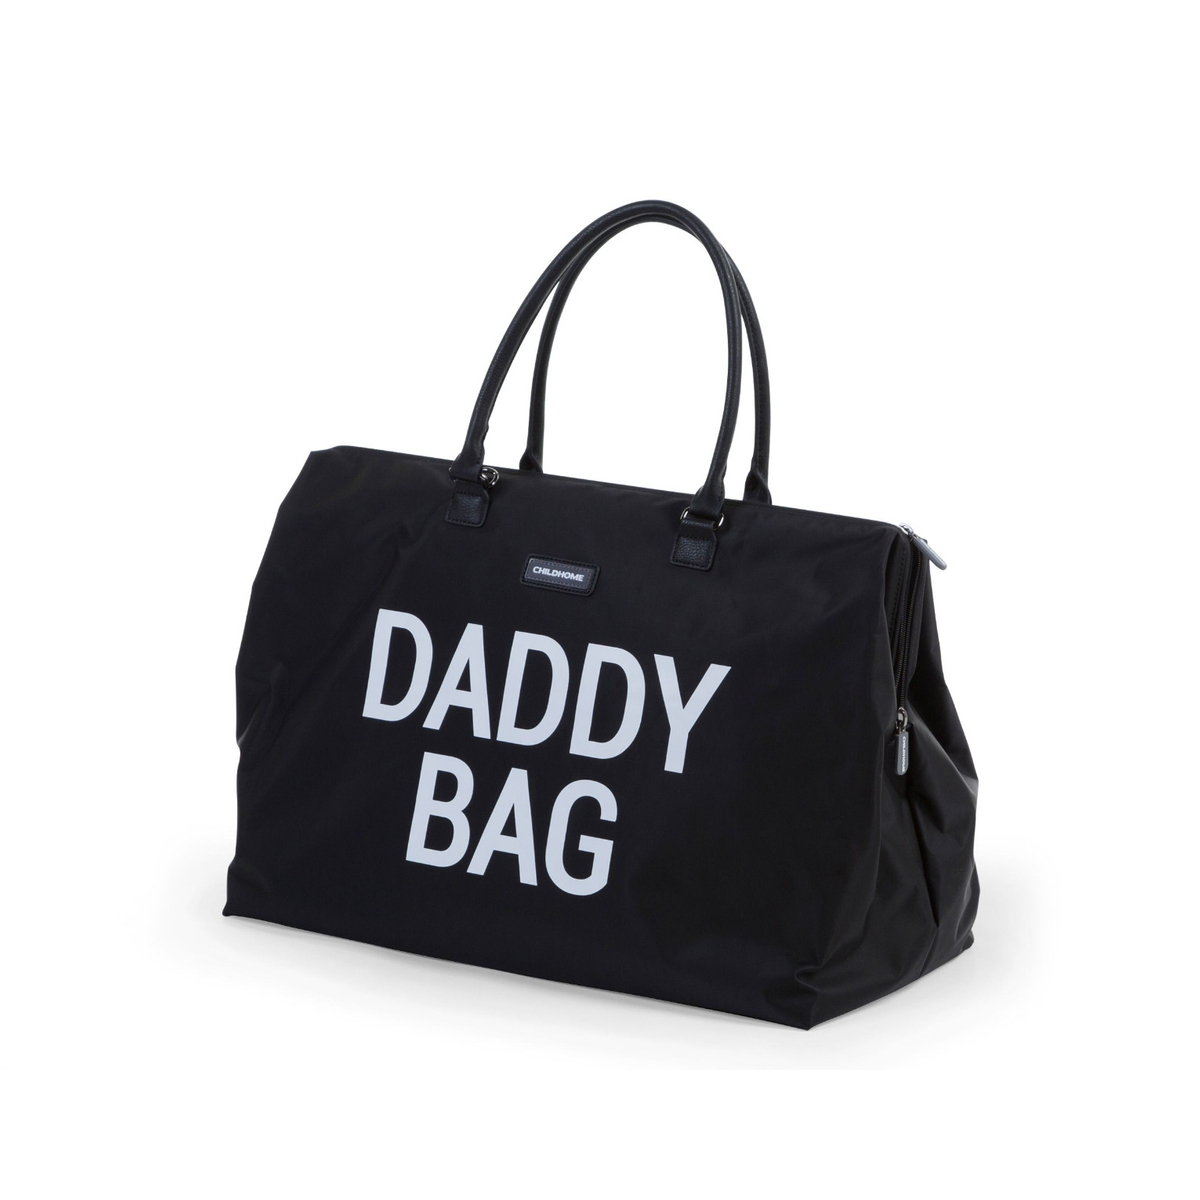 Childhome Daddy Bag Verzorgingstas - Zwart